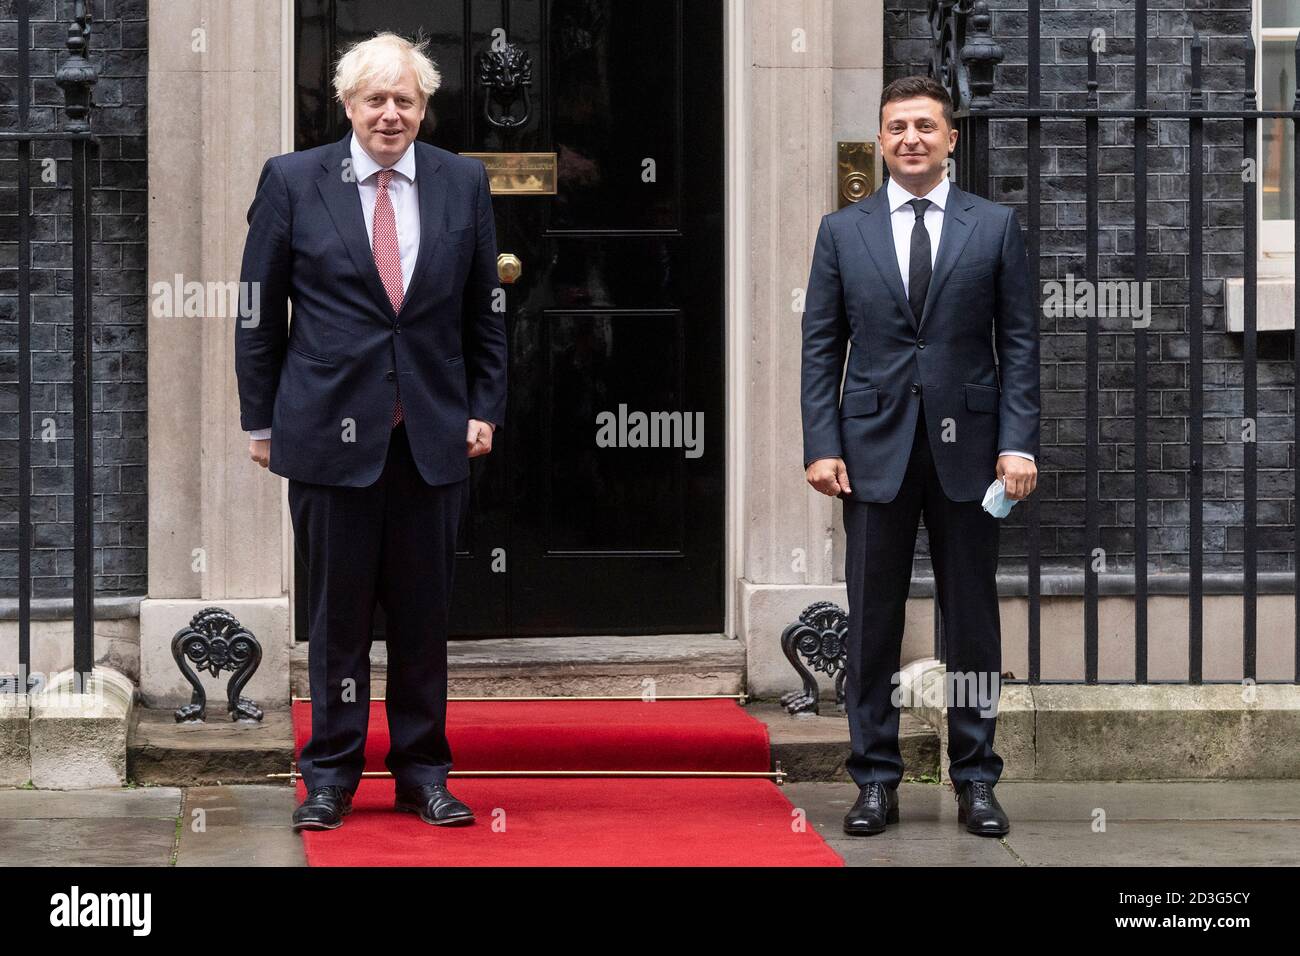 08/10/2020. Foto von Ray Tang der ukrainische Präsident Wolodymyr Zelensky verlässt die Downing Street, nachdem er am zweiten Tag von Zelenskys Besuch in Großbritannien bilaterale Gespräche mit dem britischen Premierminister Boris Johnson geführt hat. Stockfoto